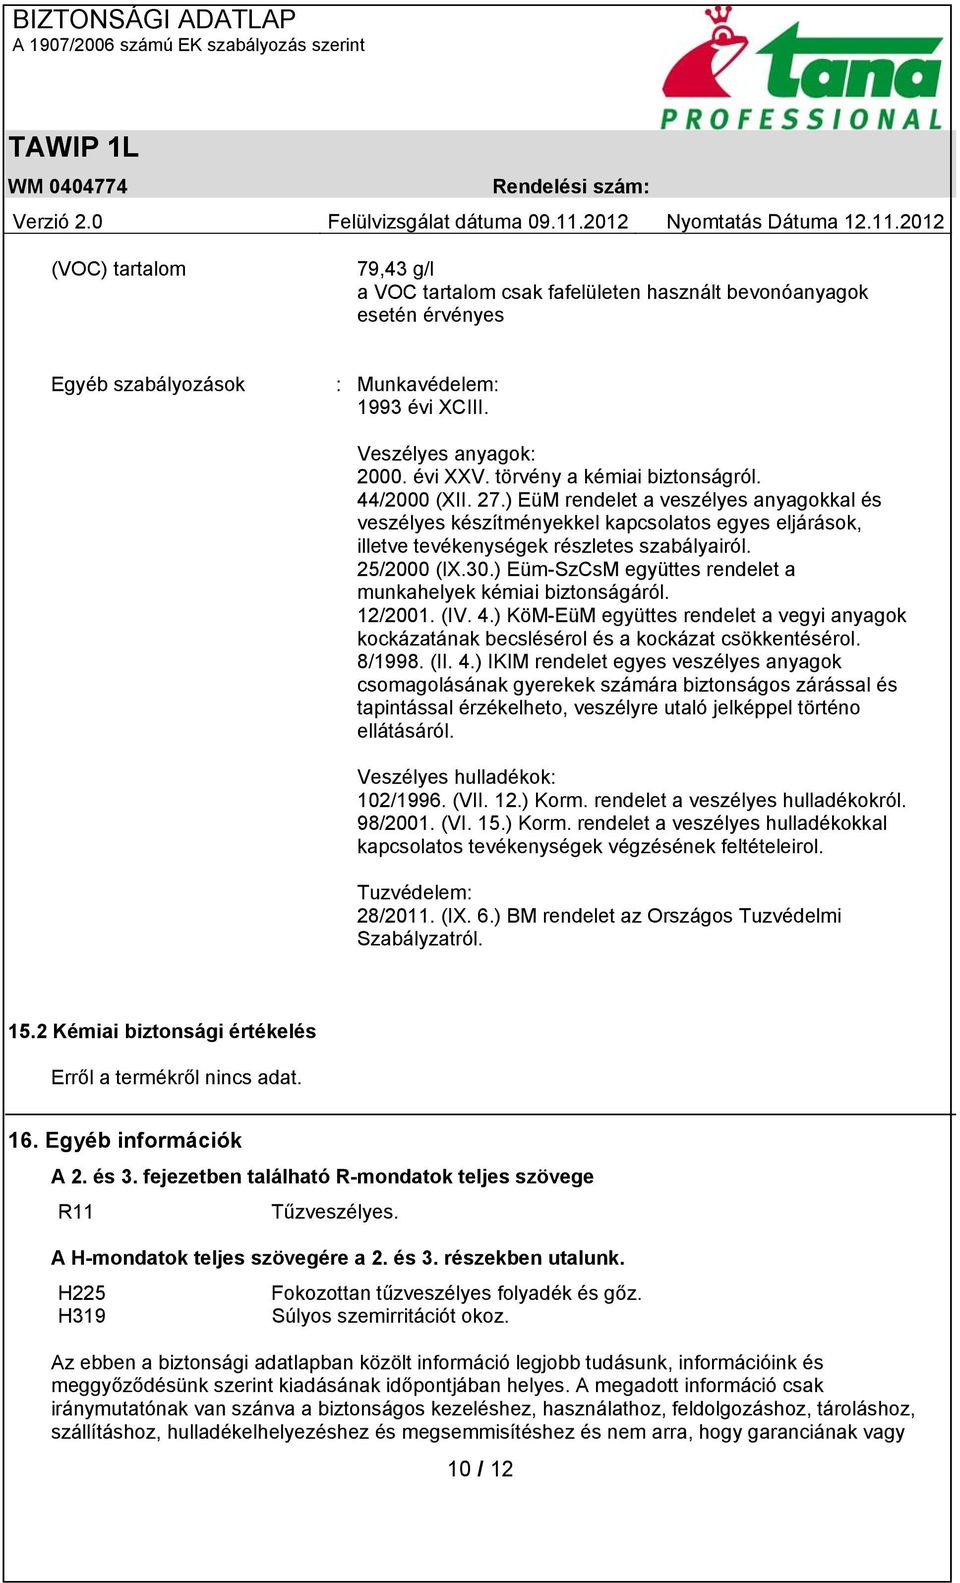 25/2000 (IX.30.) Eüm-SzCsM együttes rendelet a munkahelyek kémiai biztonságáról. 12/2001. (IV. 4.) KöM-EüM együttes rendelet a vegyi anyagok kockázatának becslésérol és a kockázat csökkentésérol.